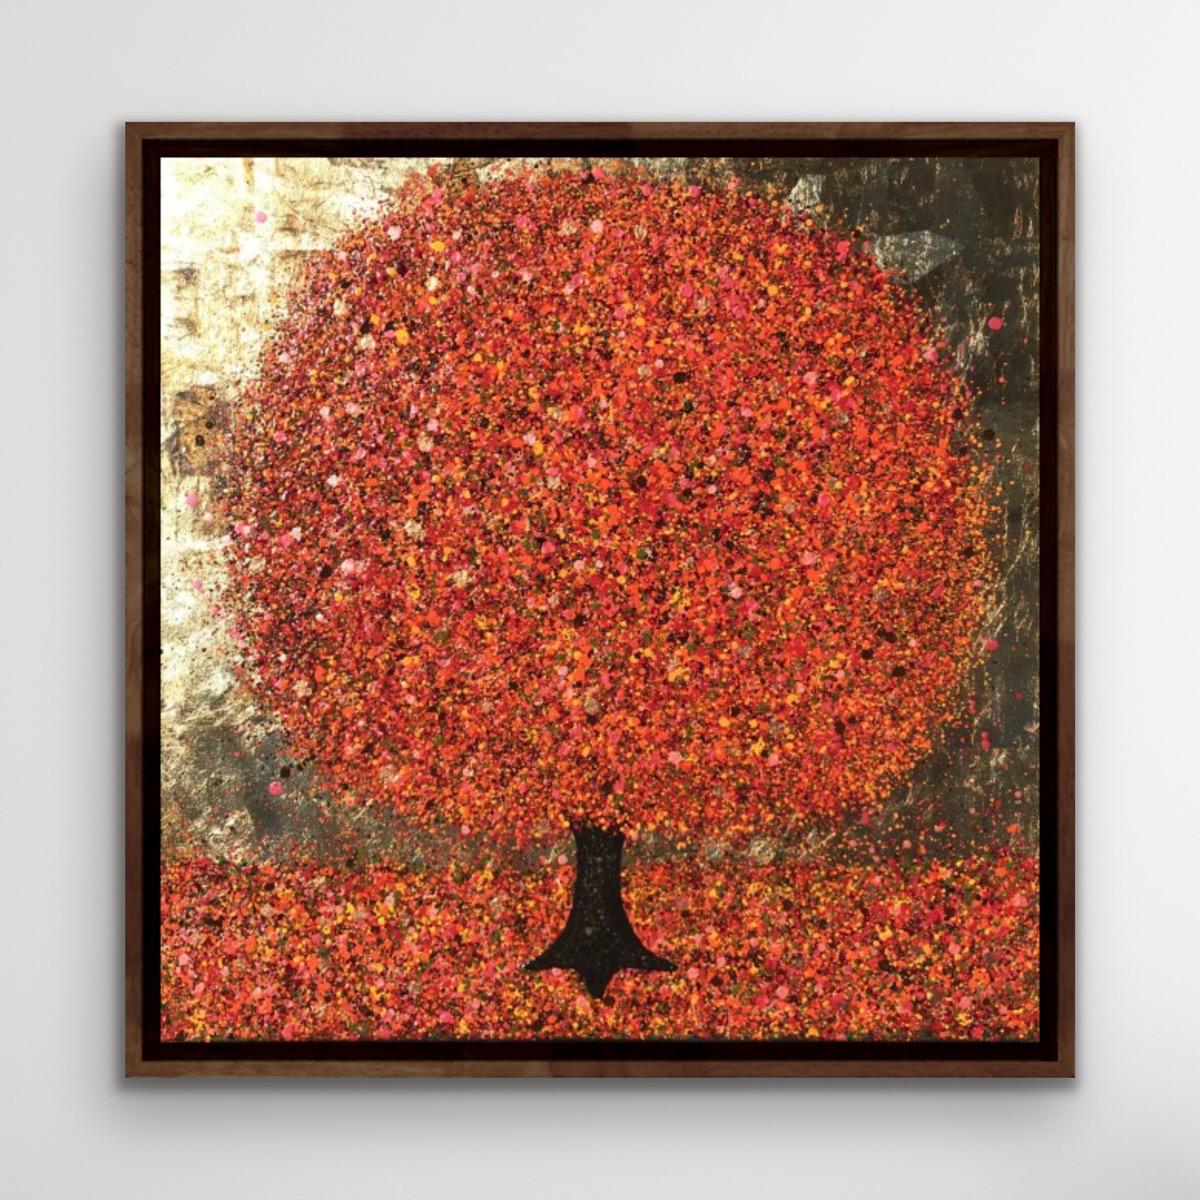 Autumn's Golden Heart est une peinture originale de Nicky Chubb.
Nicky Chubb est disponible en ligne et dans notre galerie à Wychwood Art. Nicky commente : 